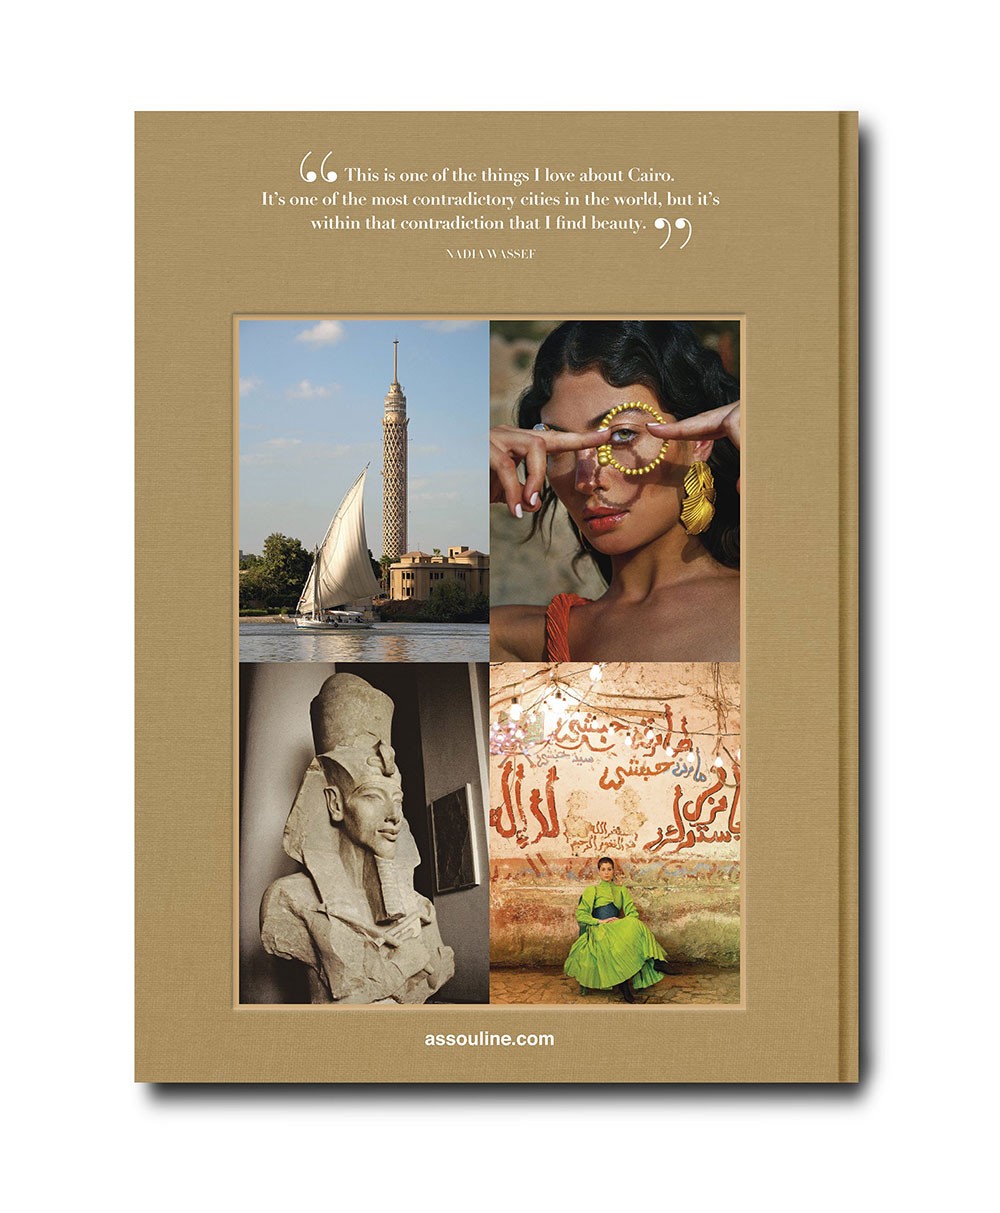 Produktbild des Coffee Table Books „Cairo Eternal“ von Assouline im RAUM concept store 